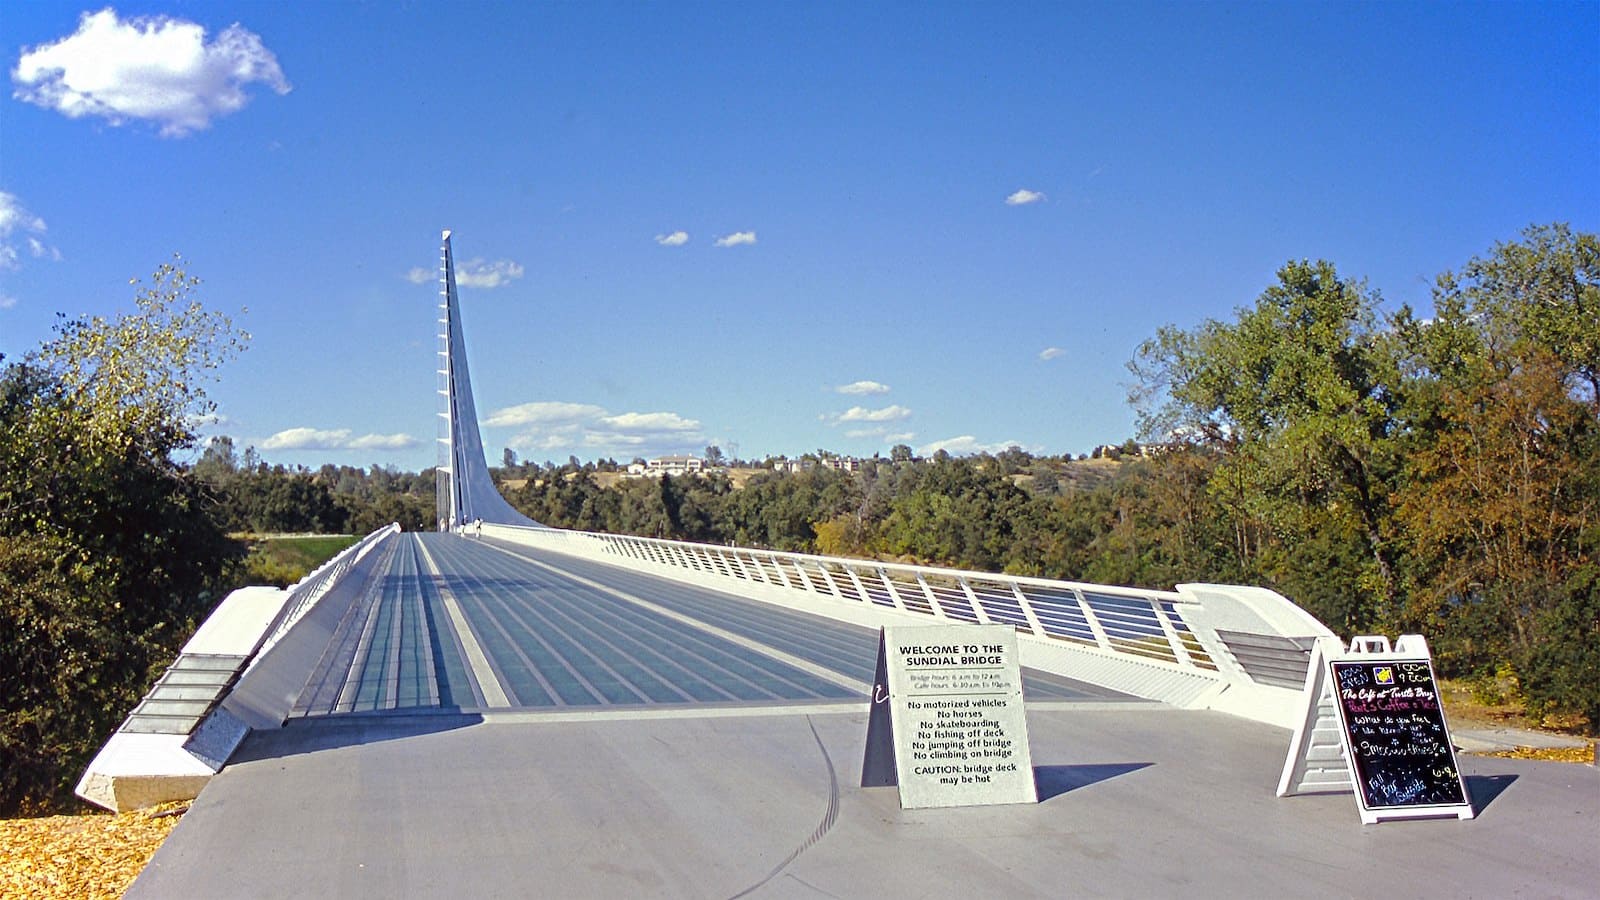 Sundial_Bridge_bridges_800x450_Tequask